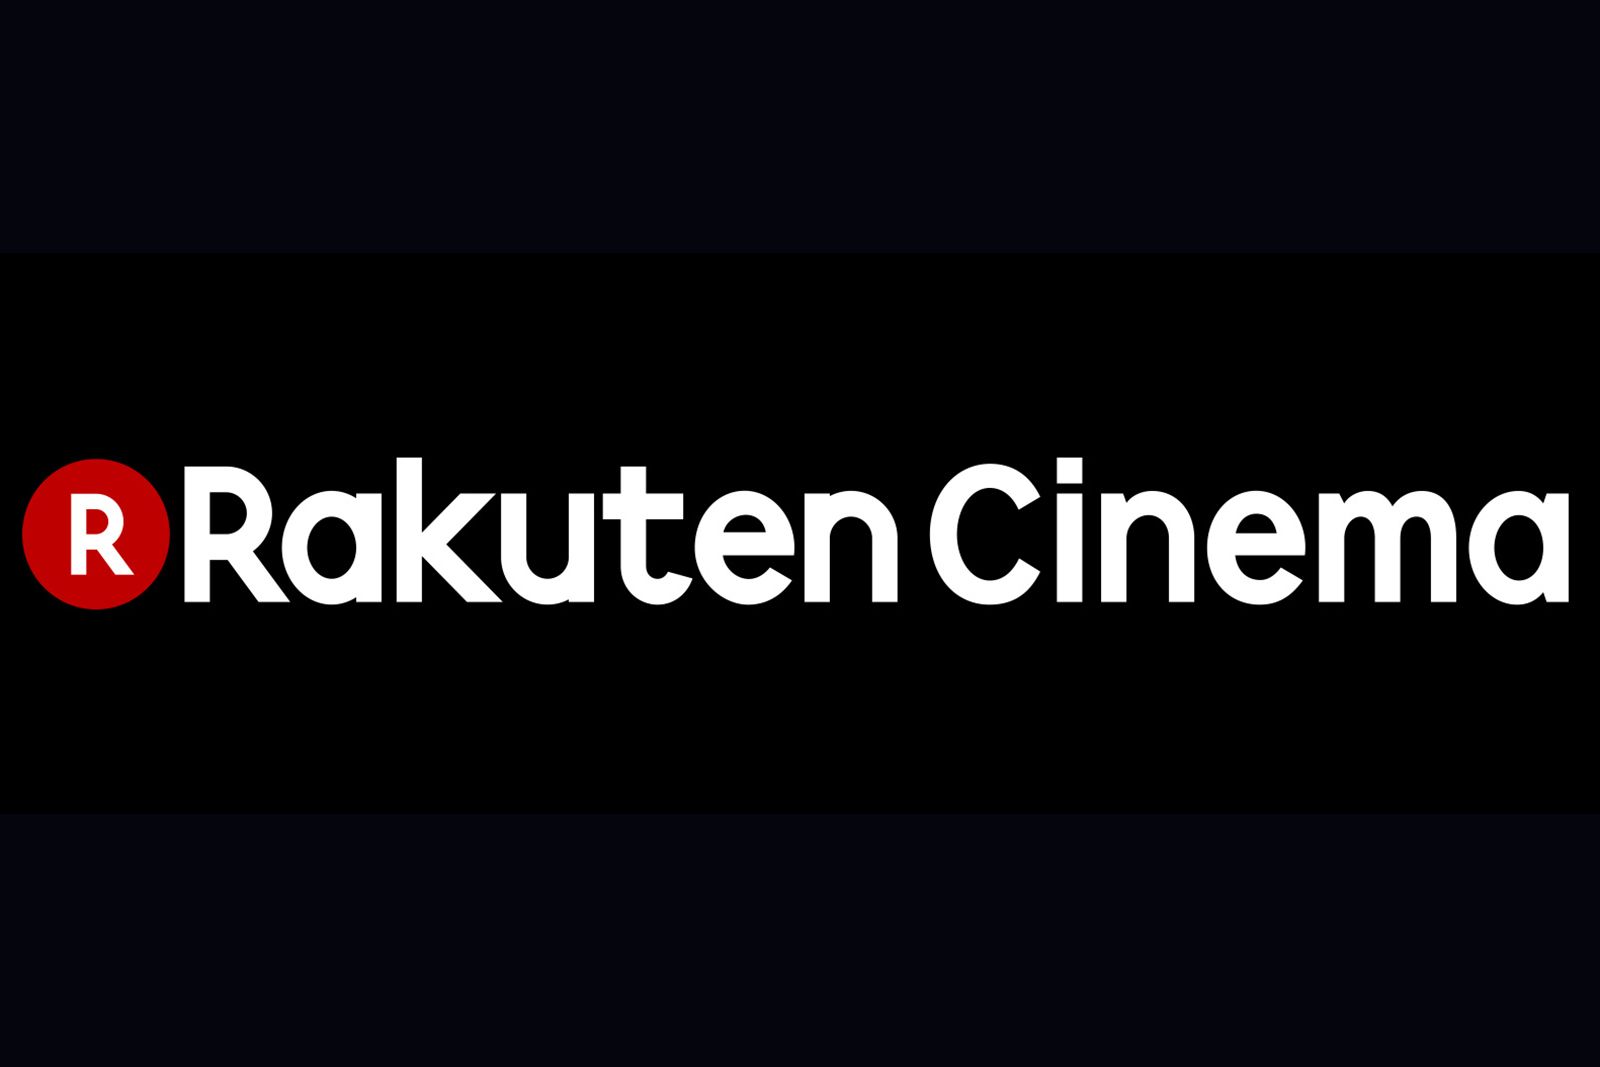 Rakuten announces day-and-date movie releases with Rakuten Cinema image 1